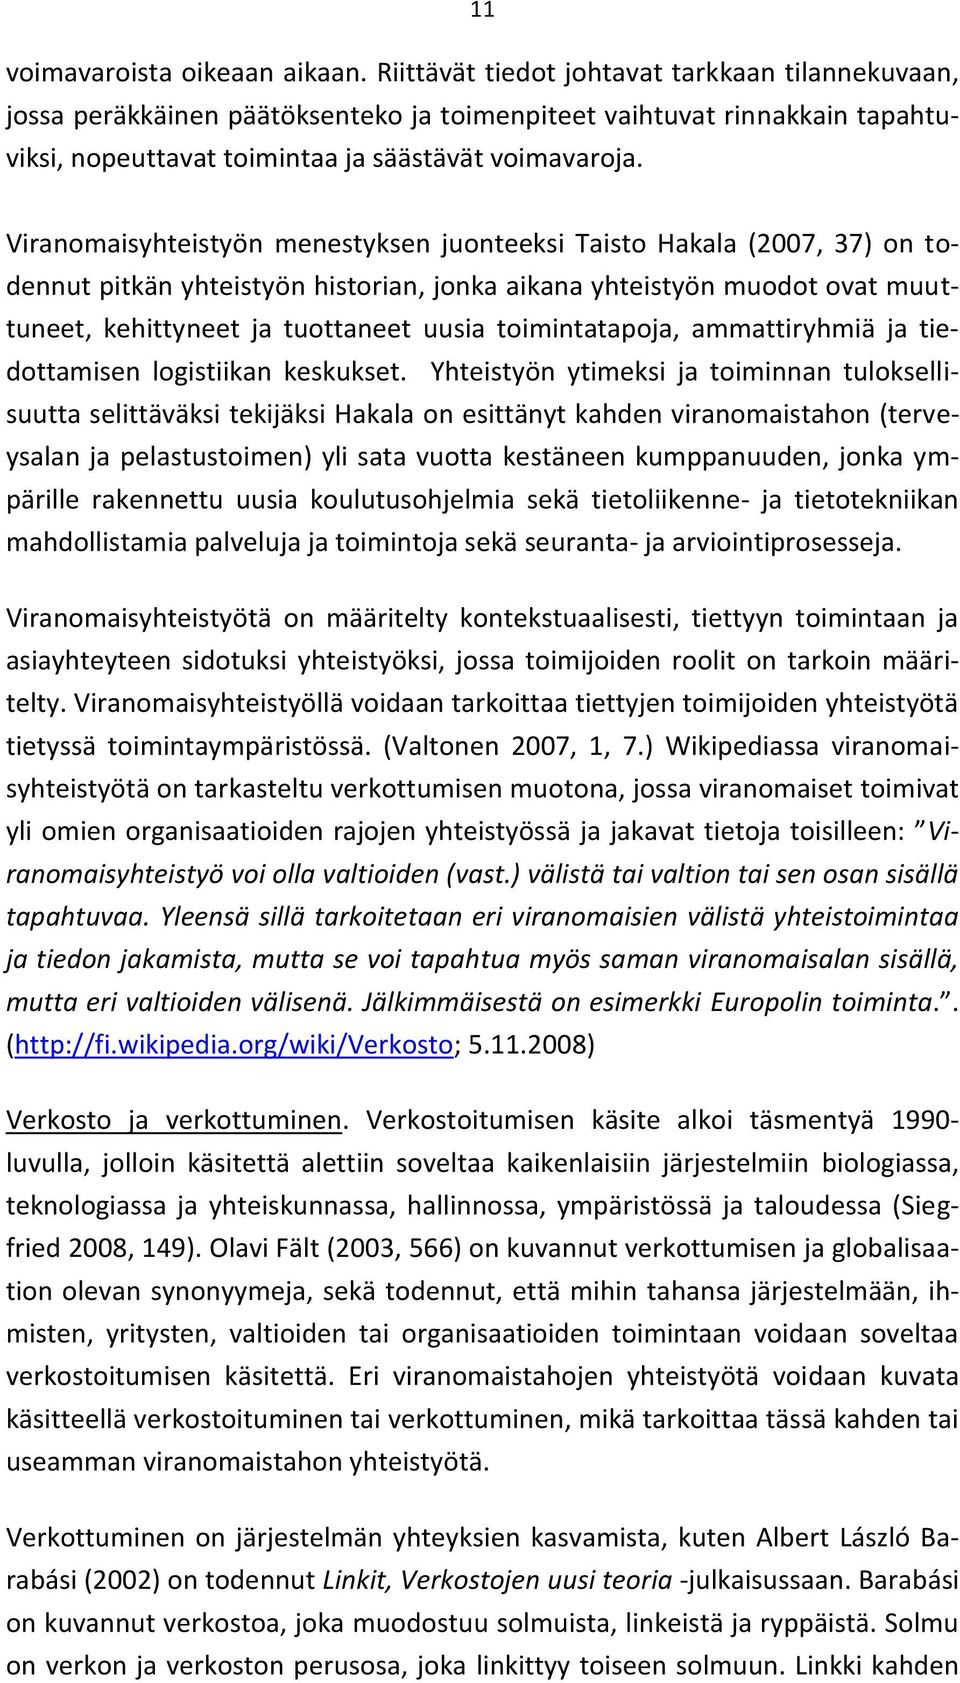 Viranomaisyhteistyön menestyksen juonteeksi Taisto Hakala (2007, 37) on todennut pitkän yhteistyön historian, jonka aikana yhteistyön muodot ovat muuttuneet, kehittyneet ja tuottaneet uusia